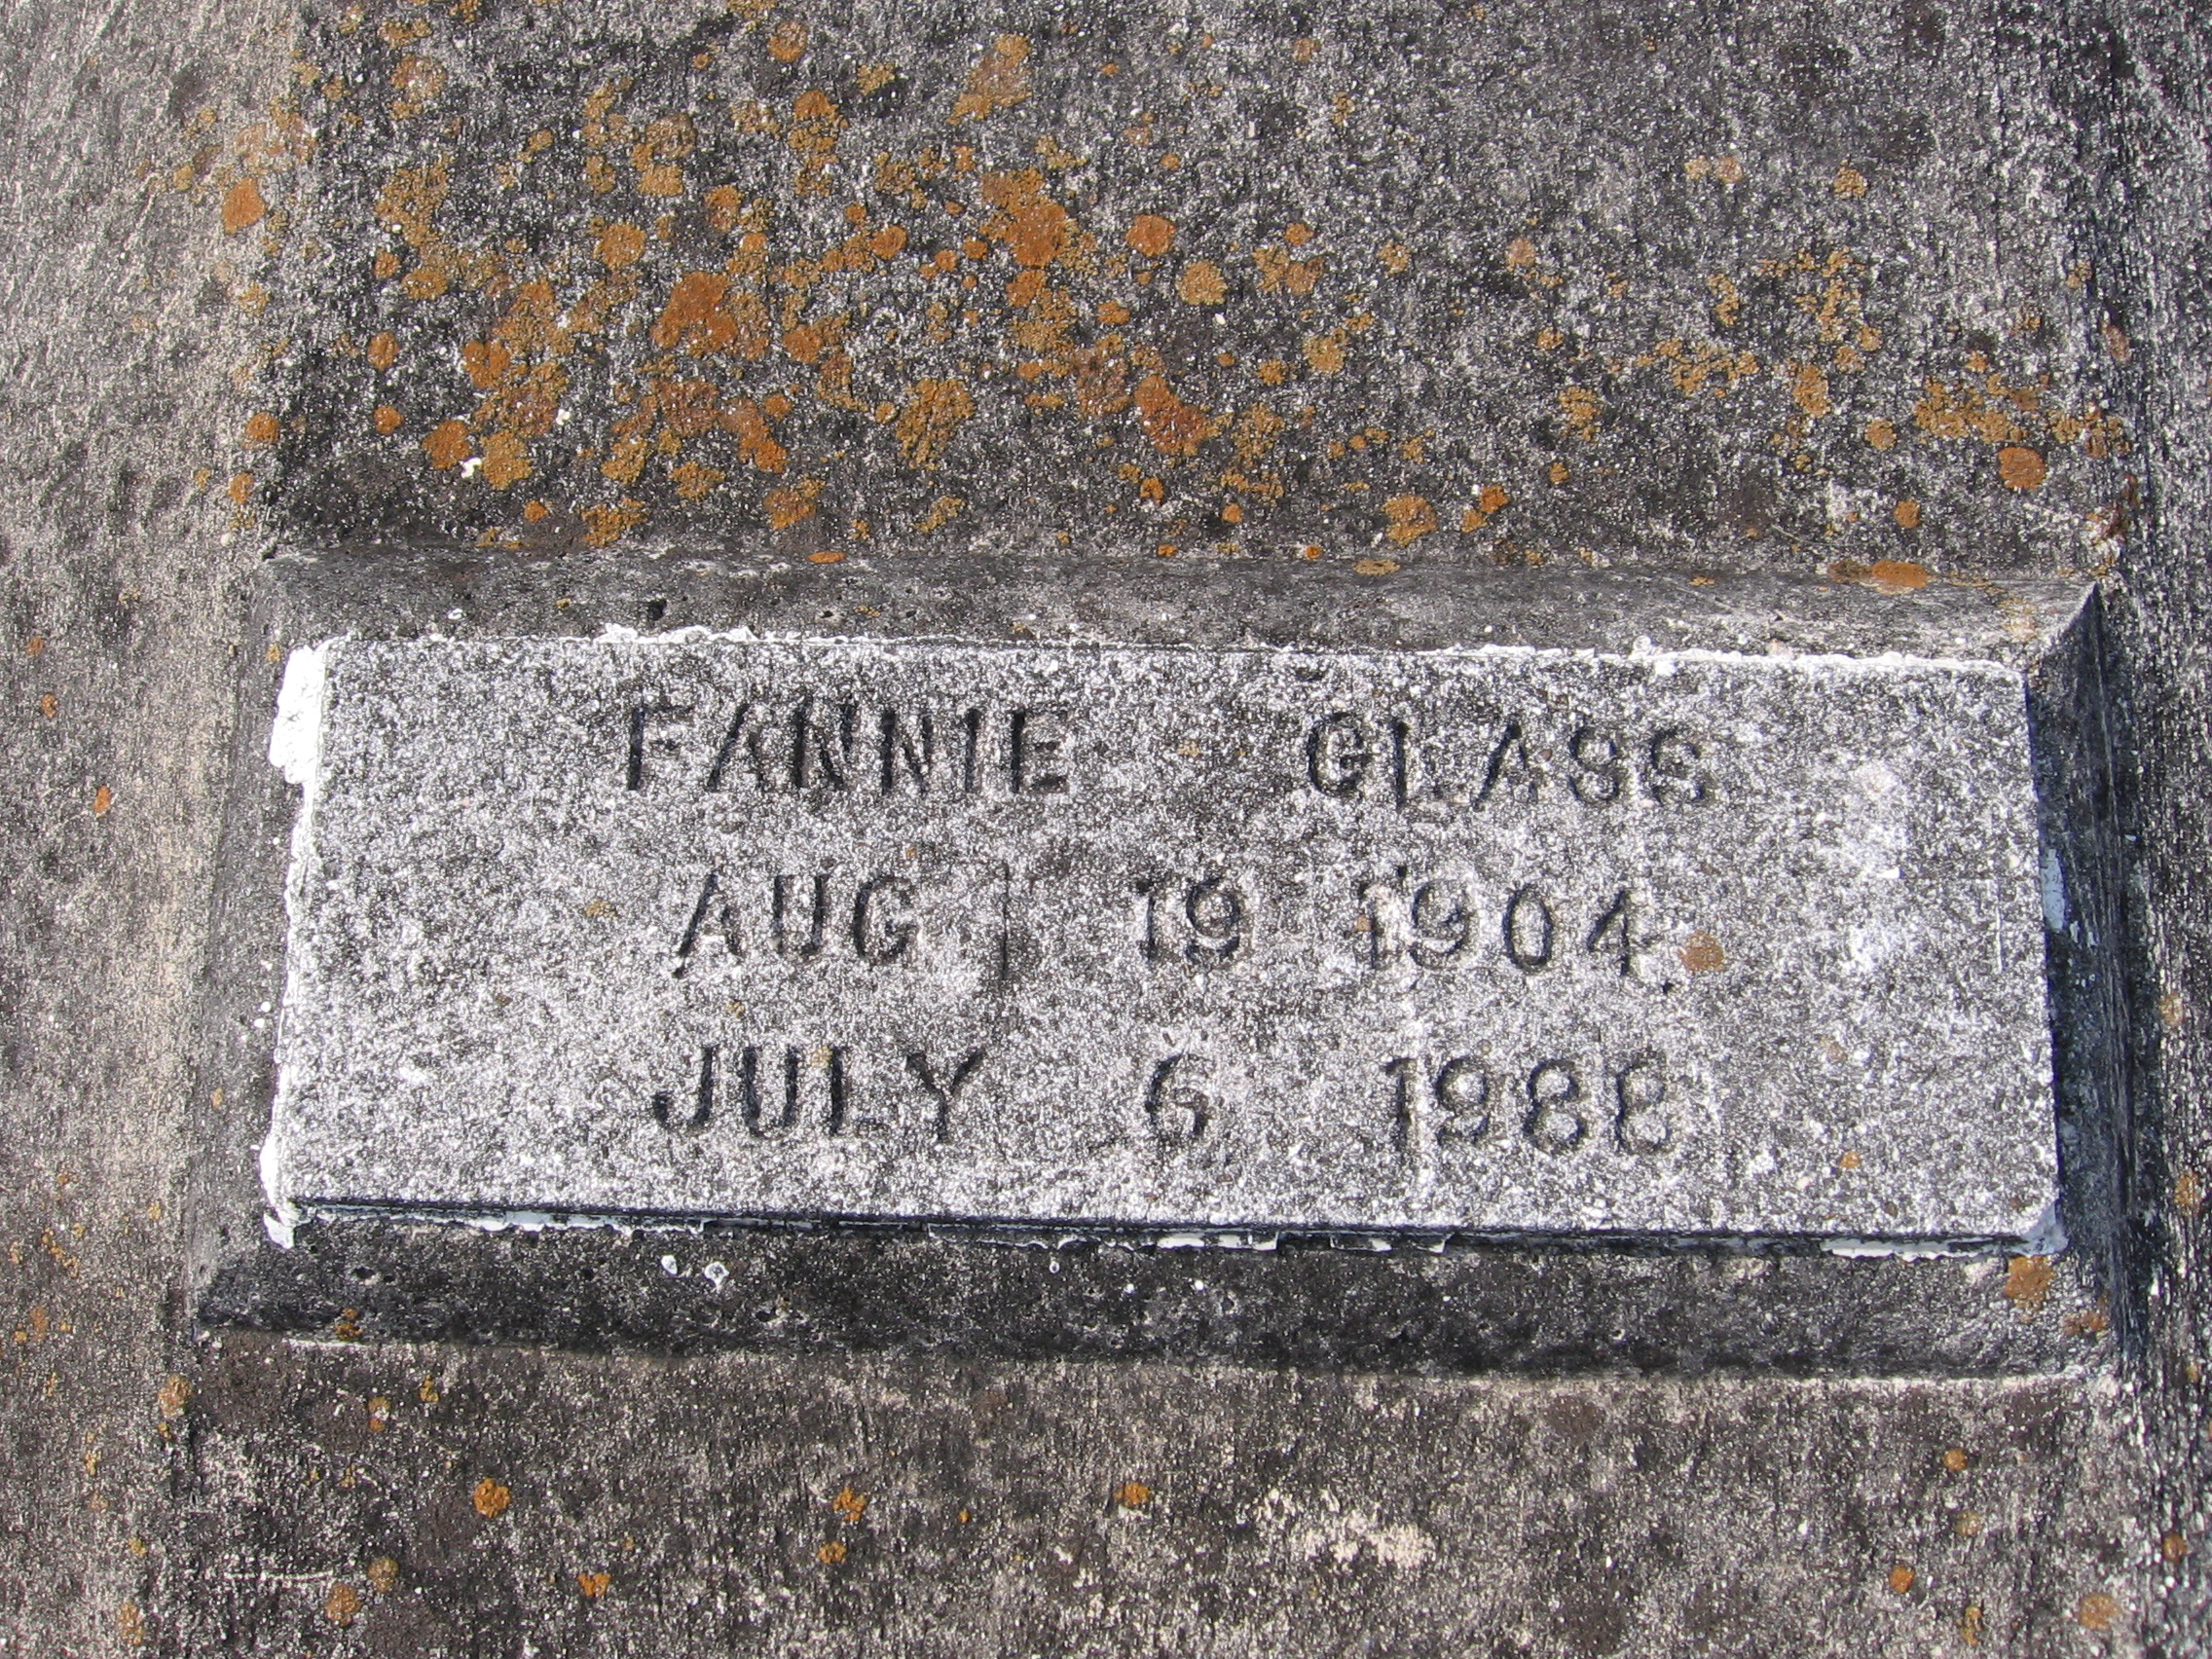 Fannie Glass